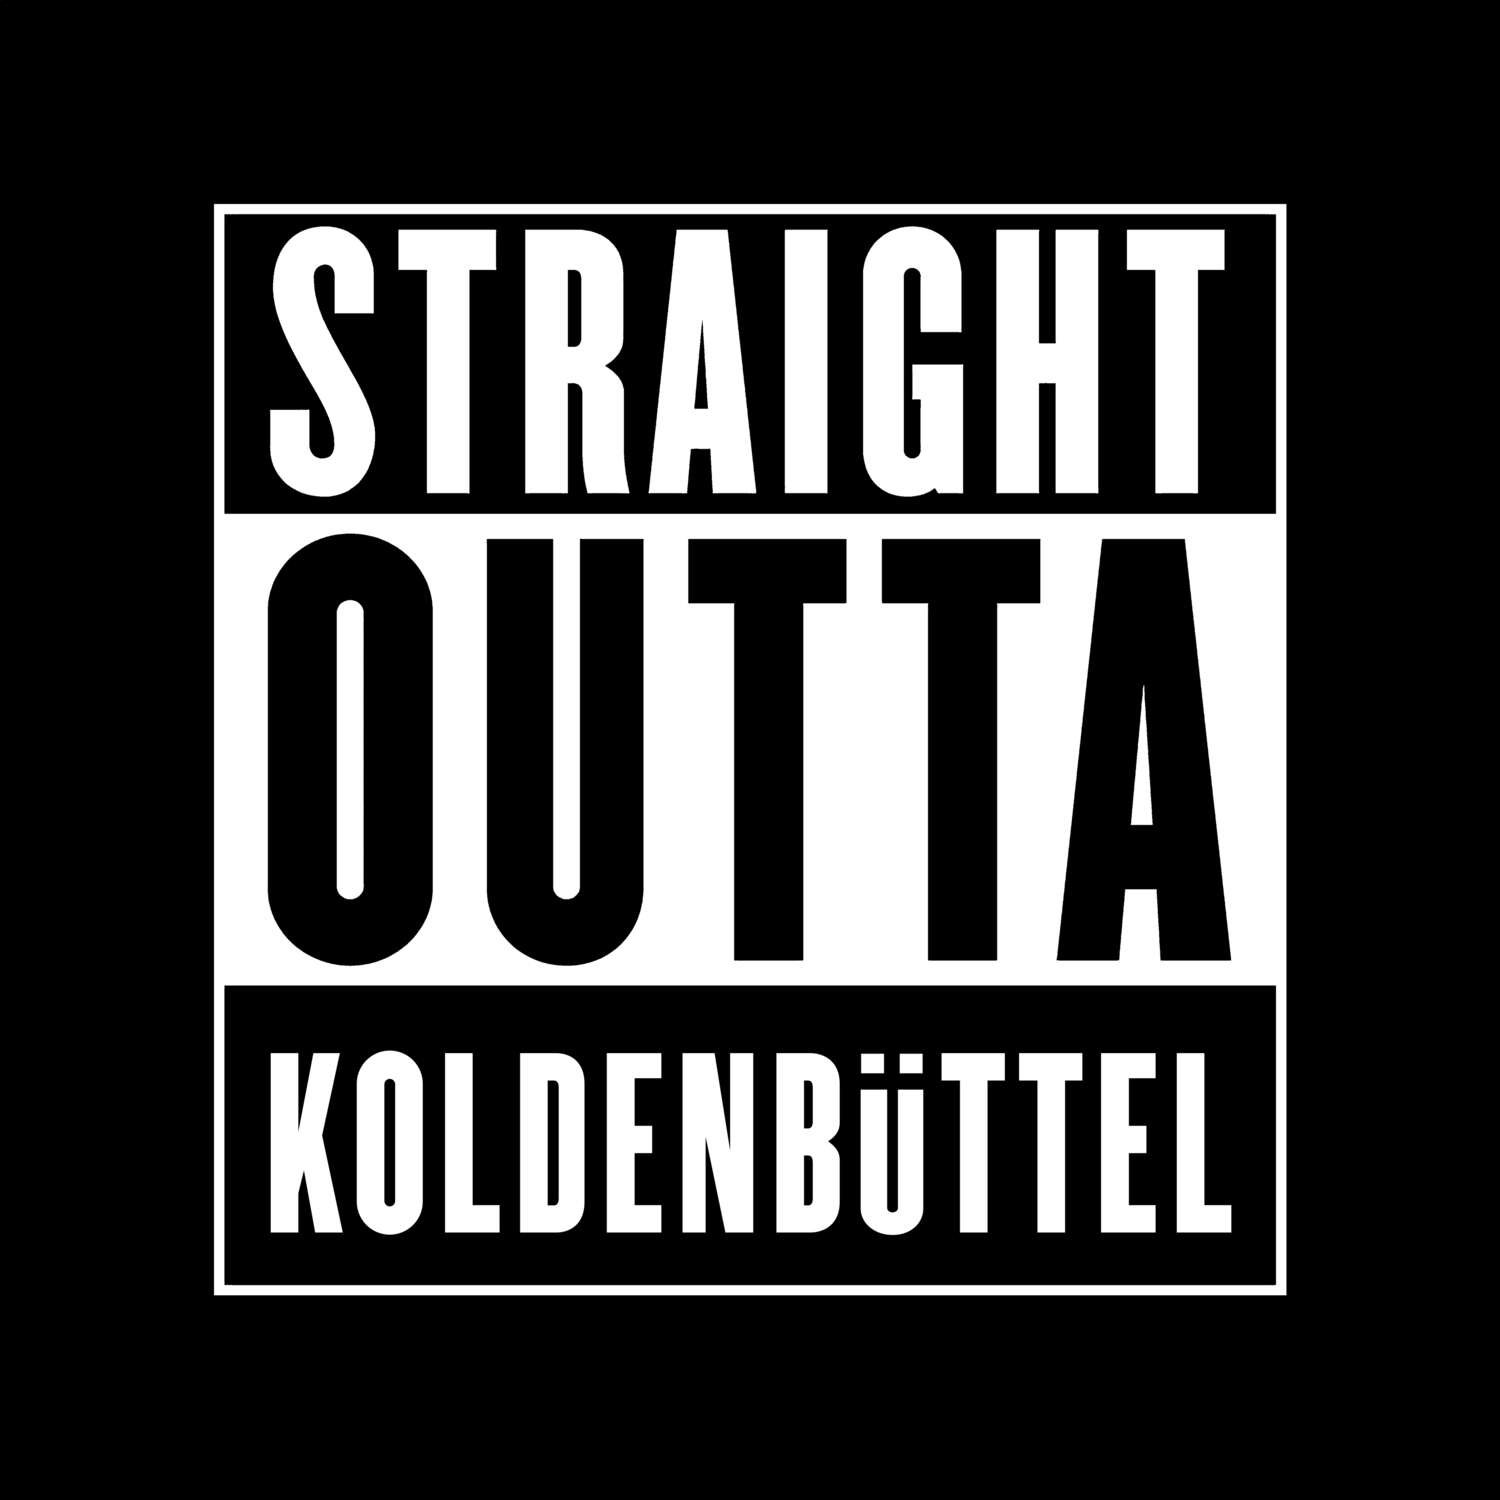 Koldenbüttel T-Shirt »Straight Outta«